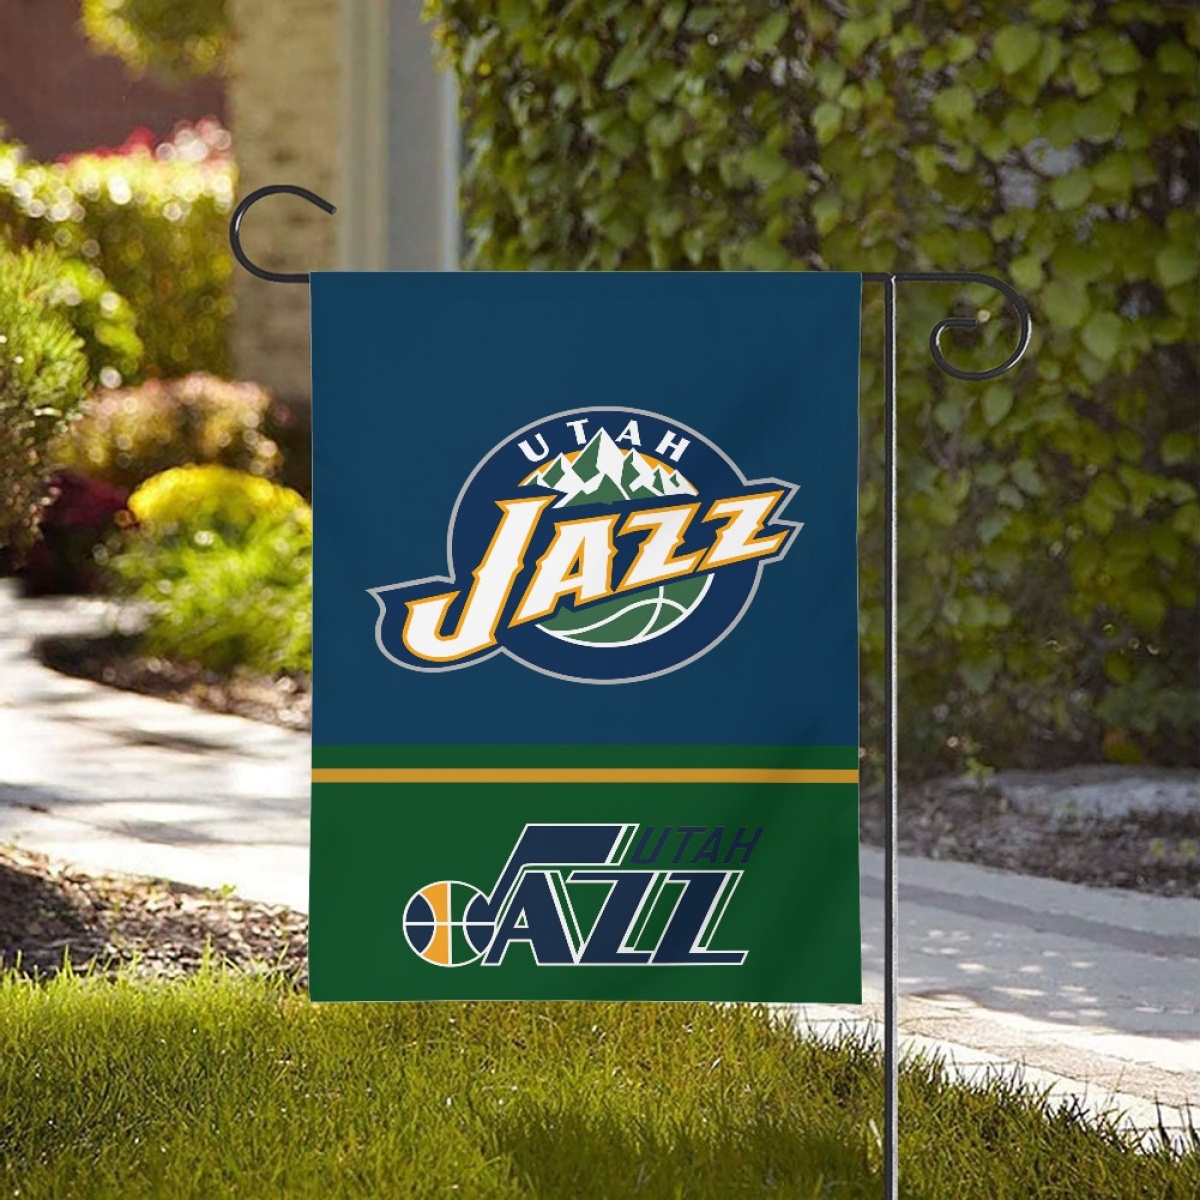 Utah Jazz Double-Sided Garden Flag 001 (Pls check description for details)